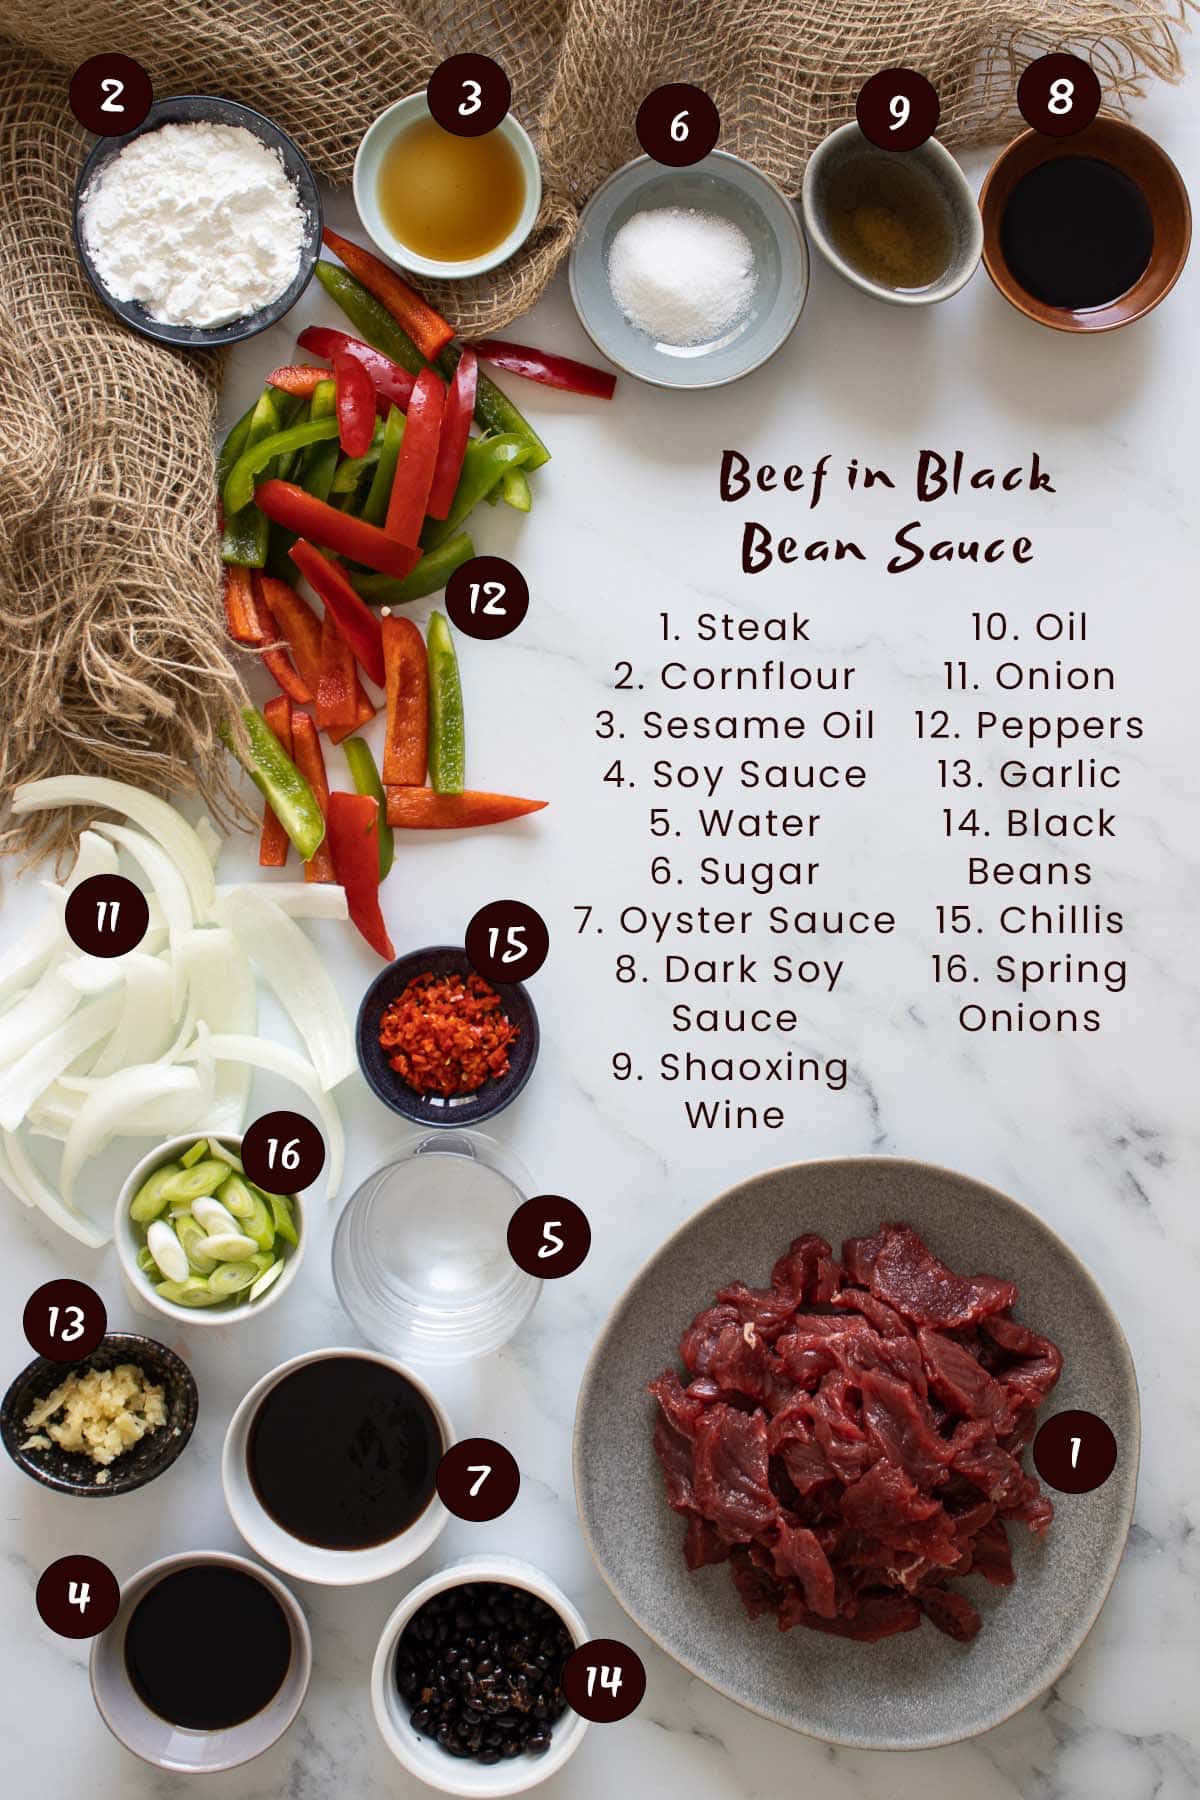 Beef in black bean sauce ingredients